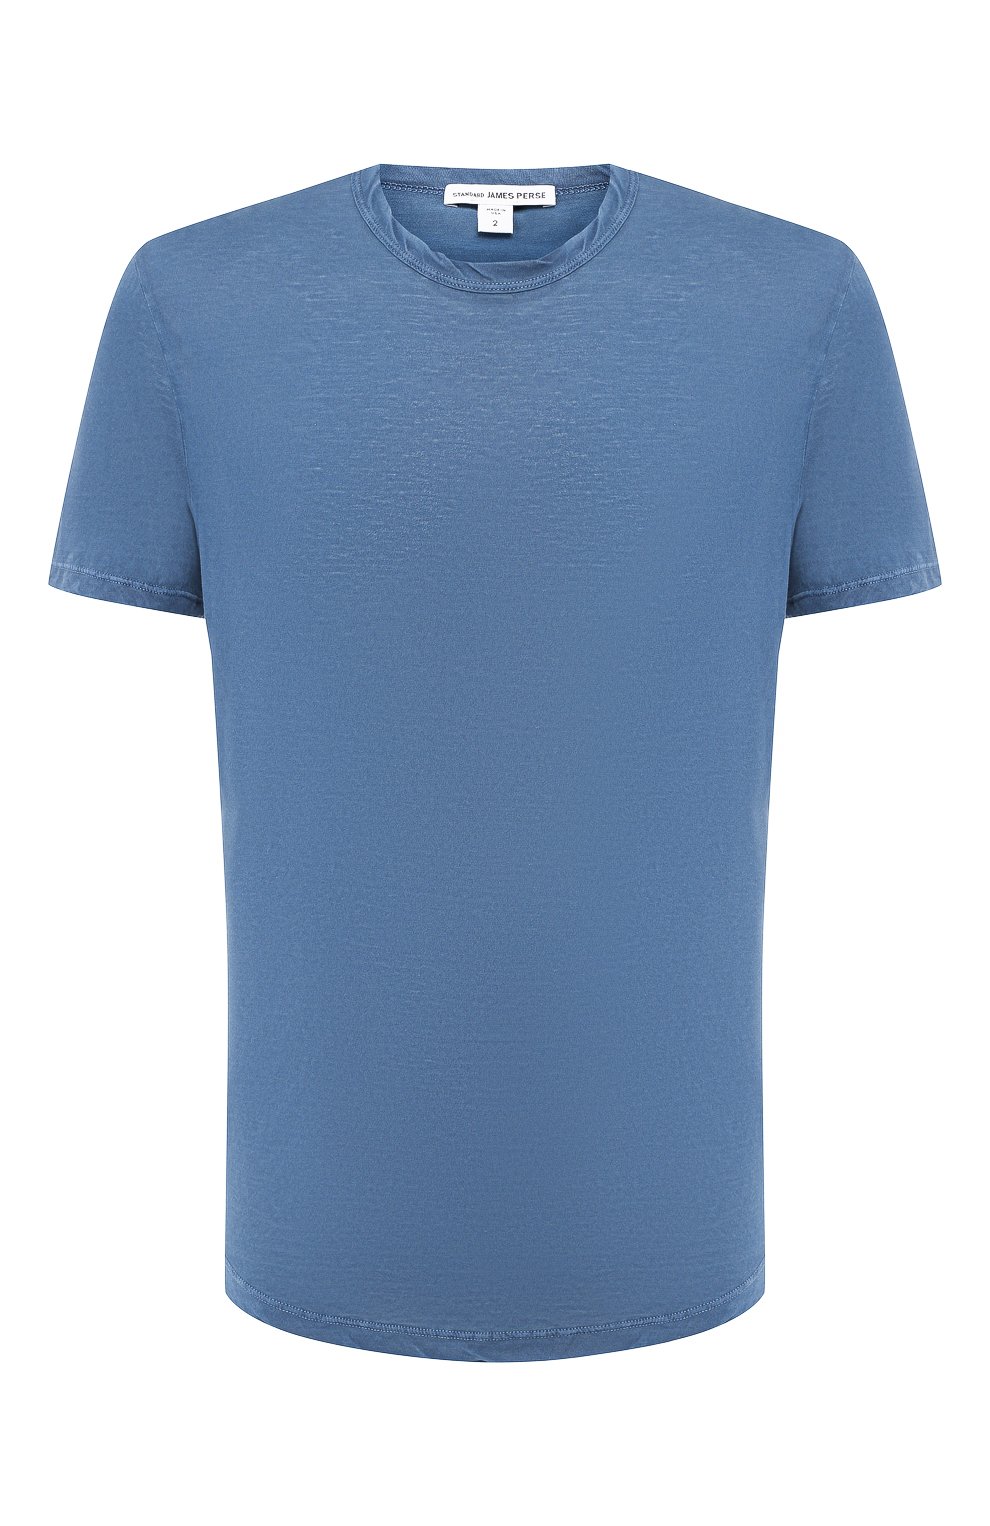 Мужская синяя хлопковая футболка JAMES PERSE купить в интернет-магазине ...